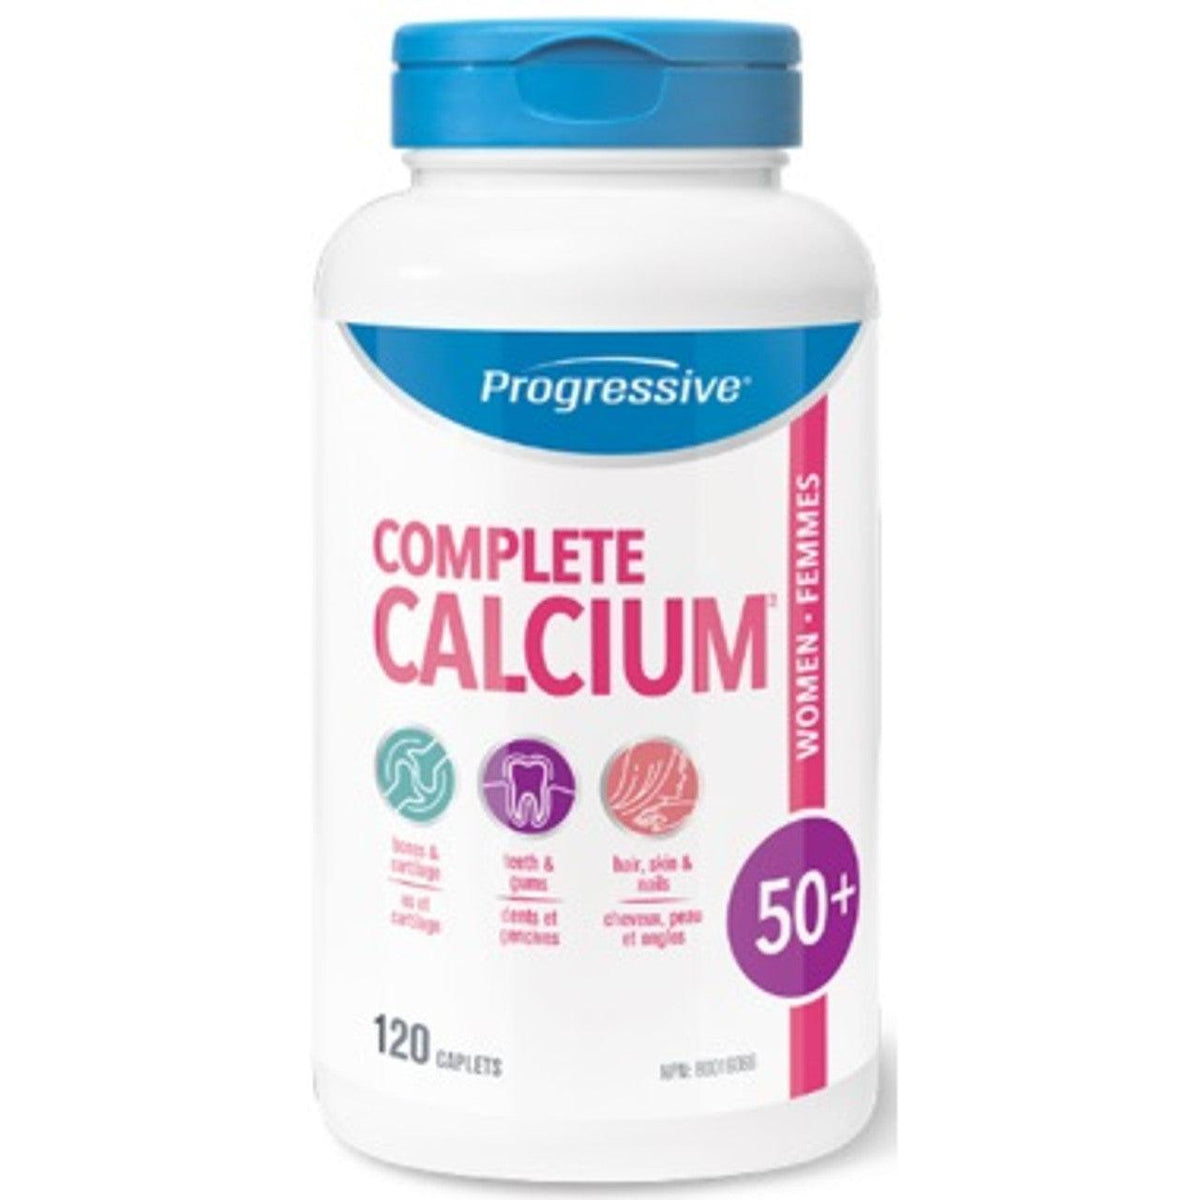 Progressive Complete Calcium For Women 50+ 120 Caplets Minerals - Calcium at Village Vitamin Store